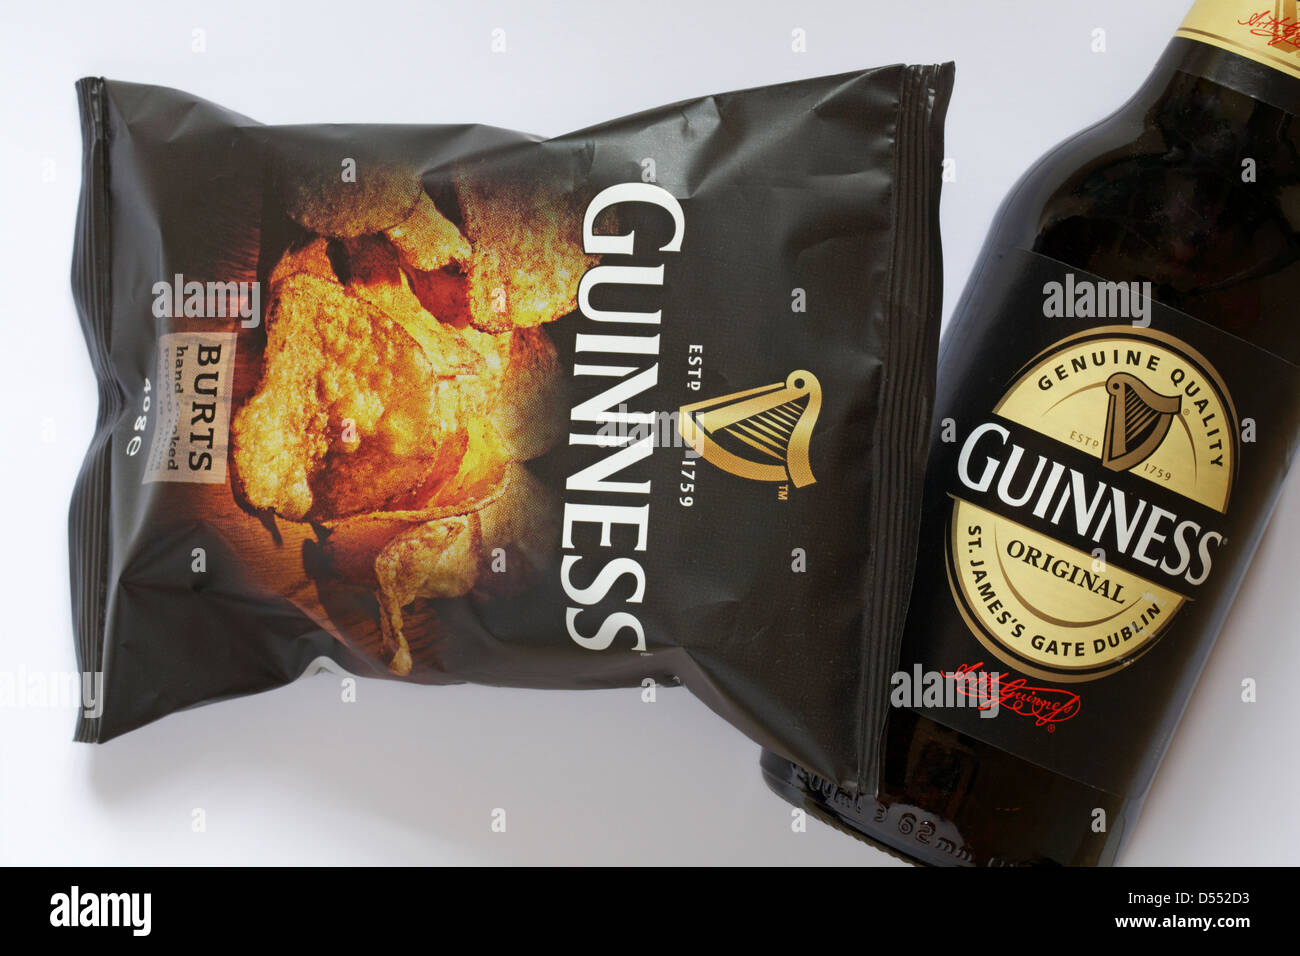 Pacchetto di 40g di Guinness esplode mano cotto patatine fritte fatte in Devon con bottiglia di Guinness impostato su sfondo bianco Foto Stock